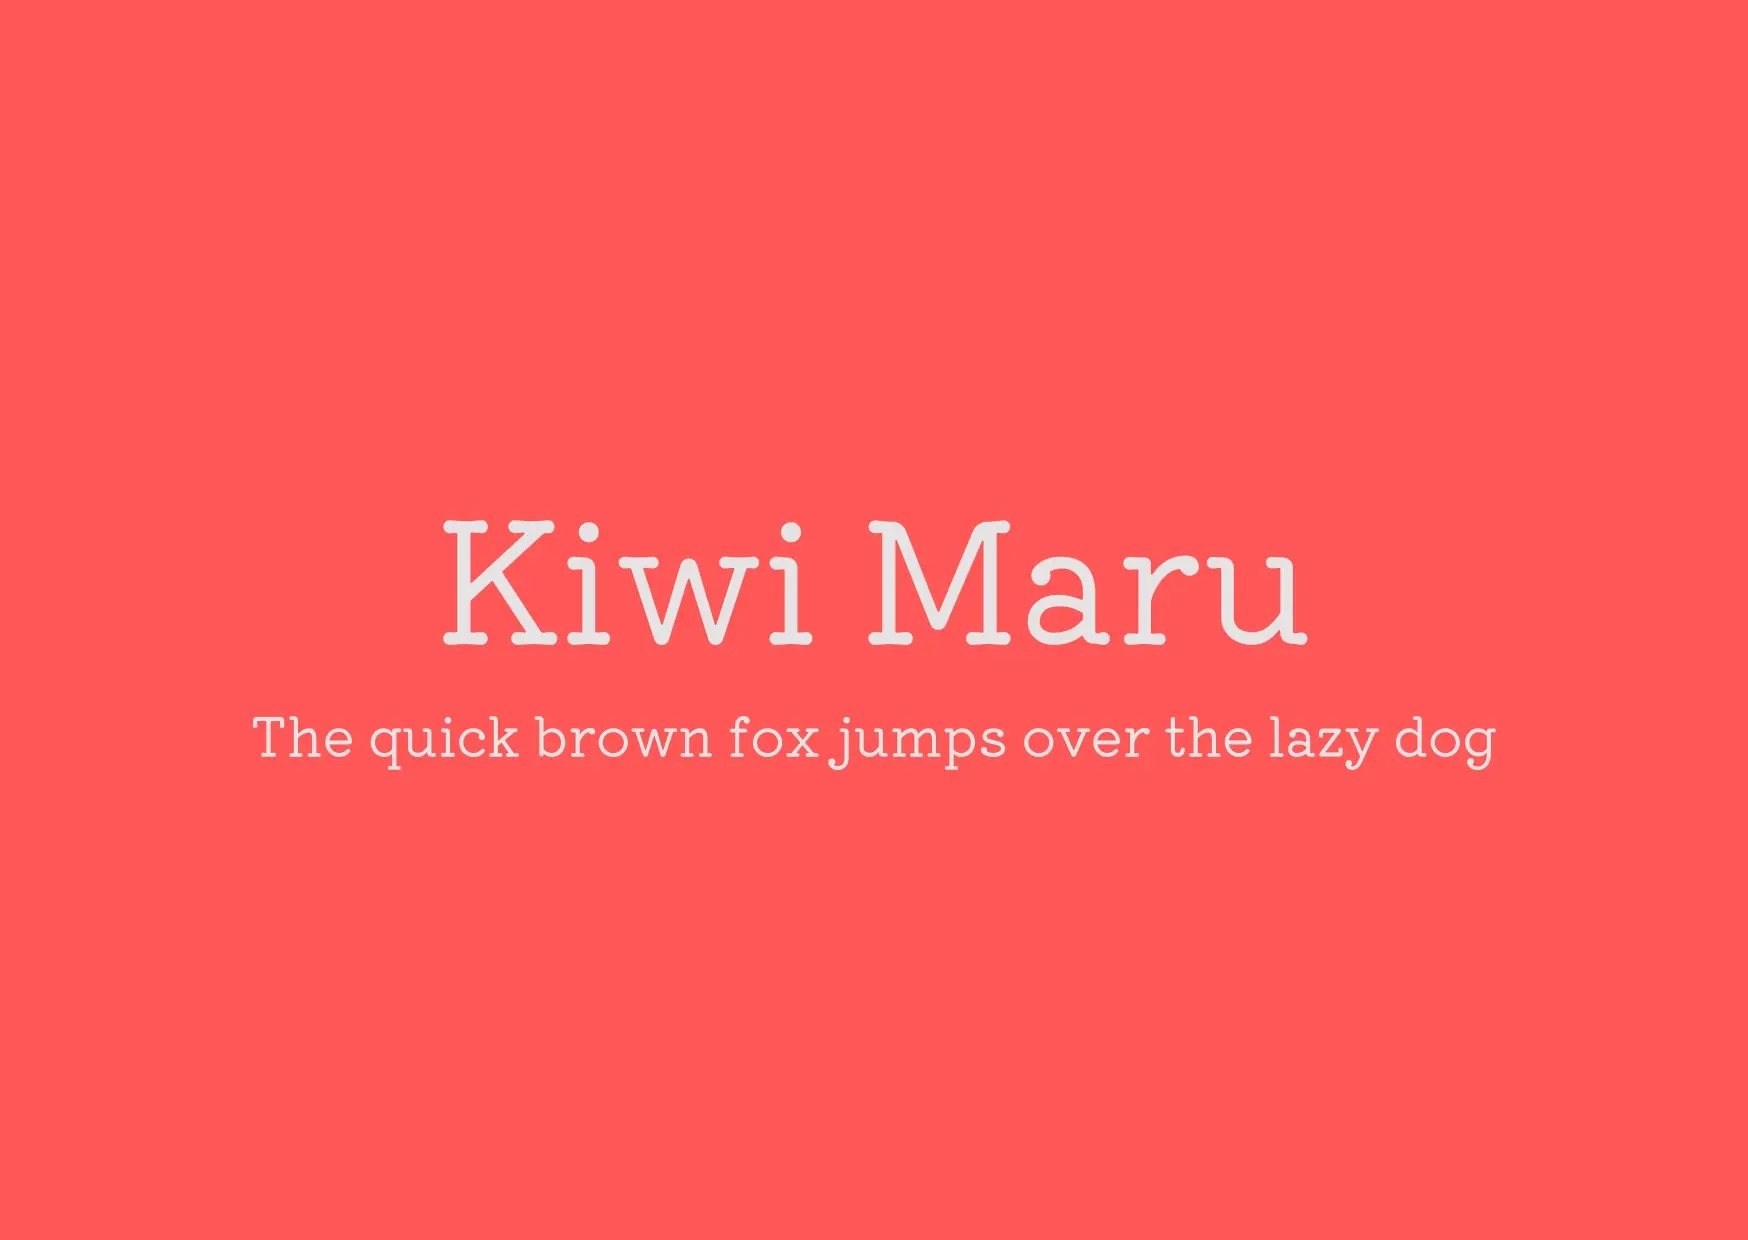 Blogduwebdesign police serif kiwi maru